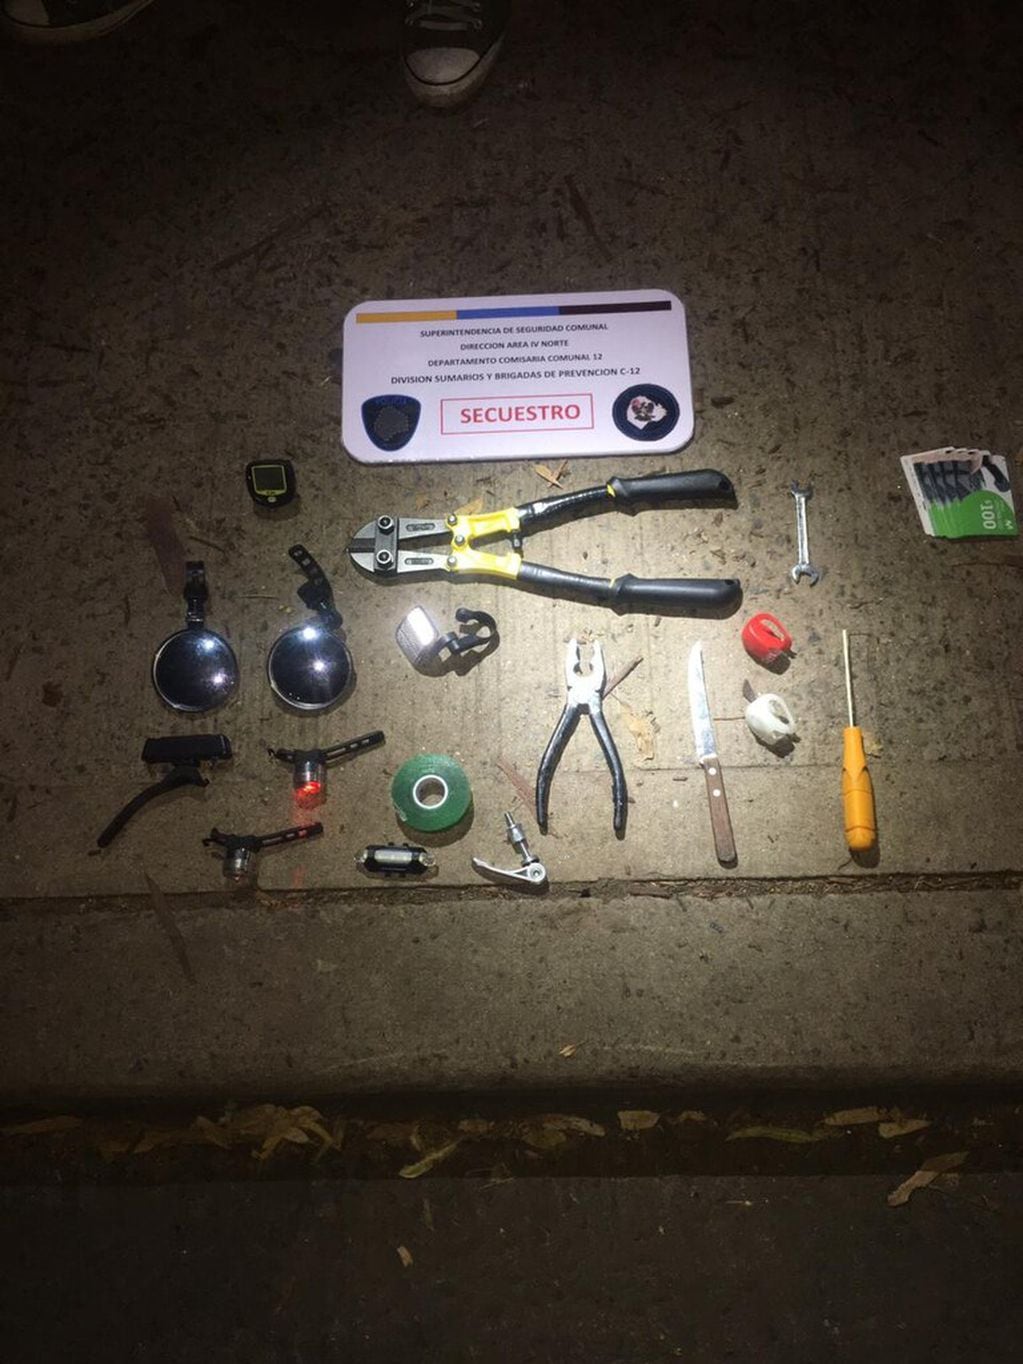 Los objetos secuestrados luego de la detención. (Foto: La Nación)